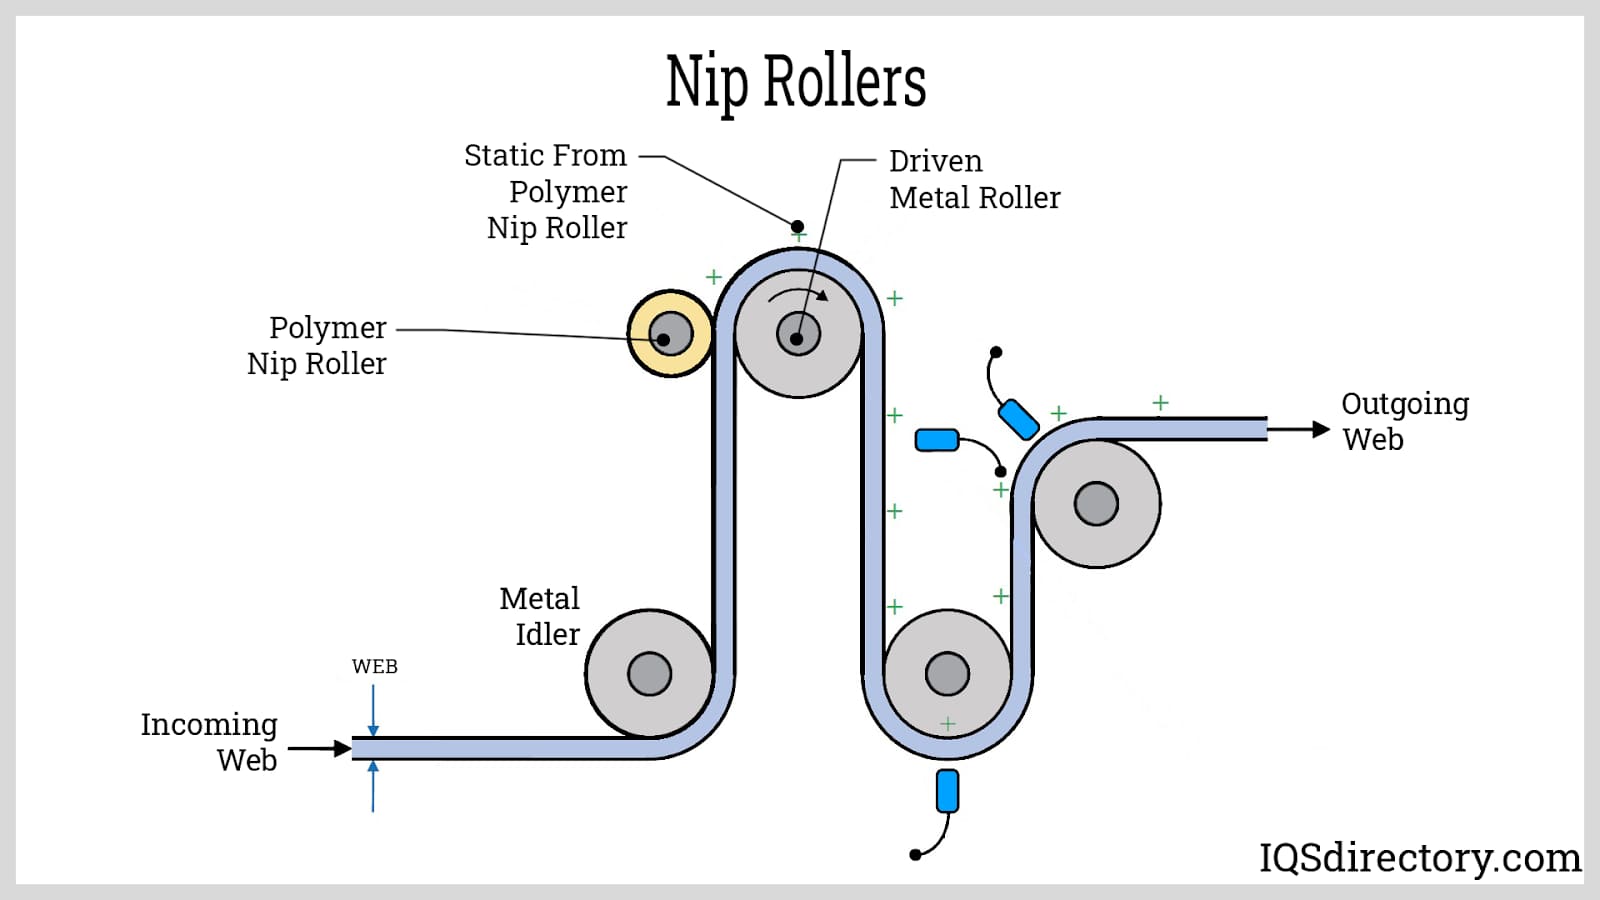 Nip Rollers